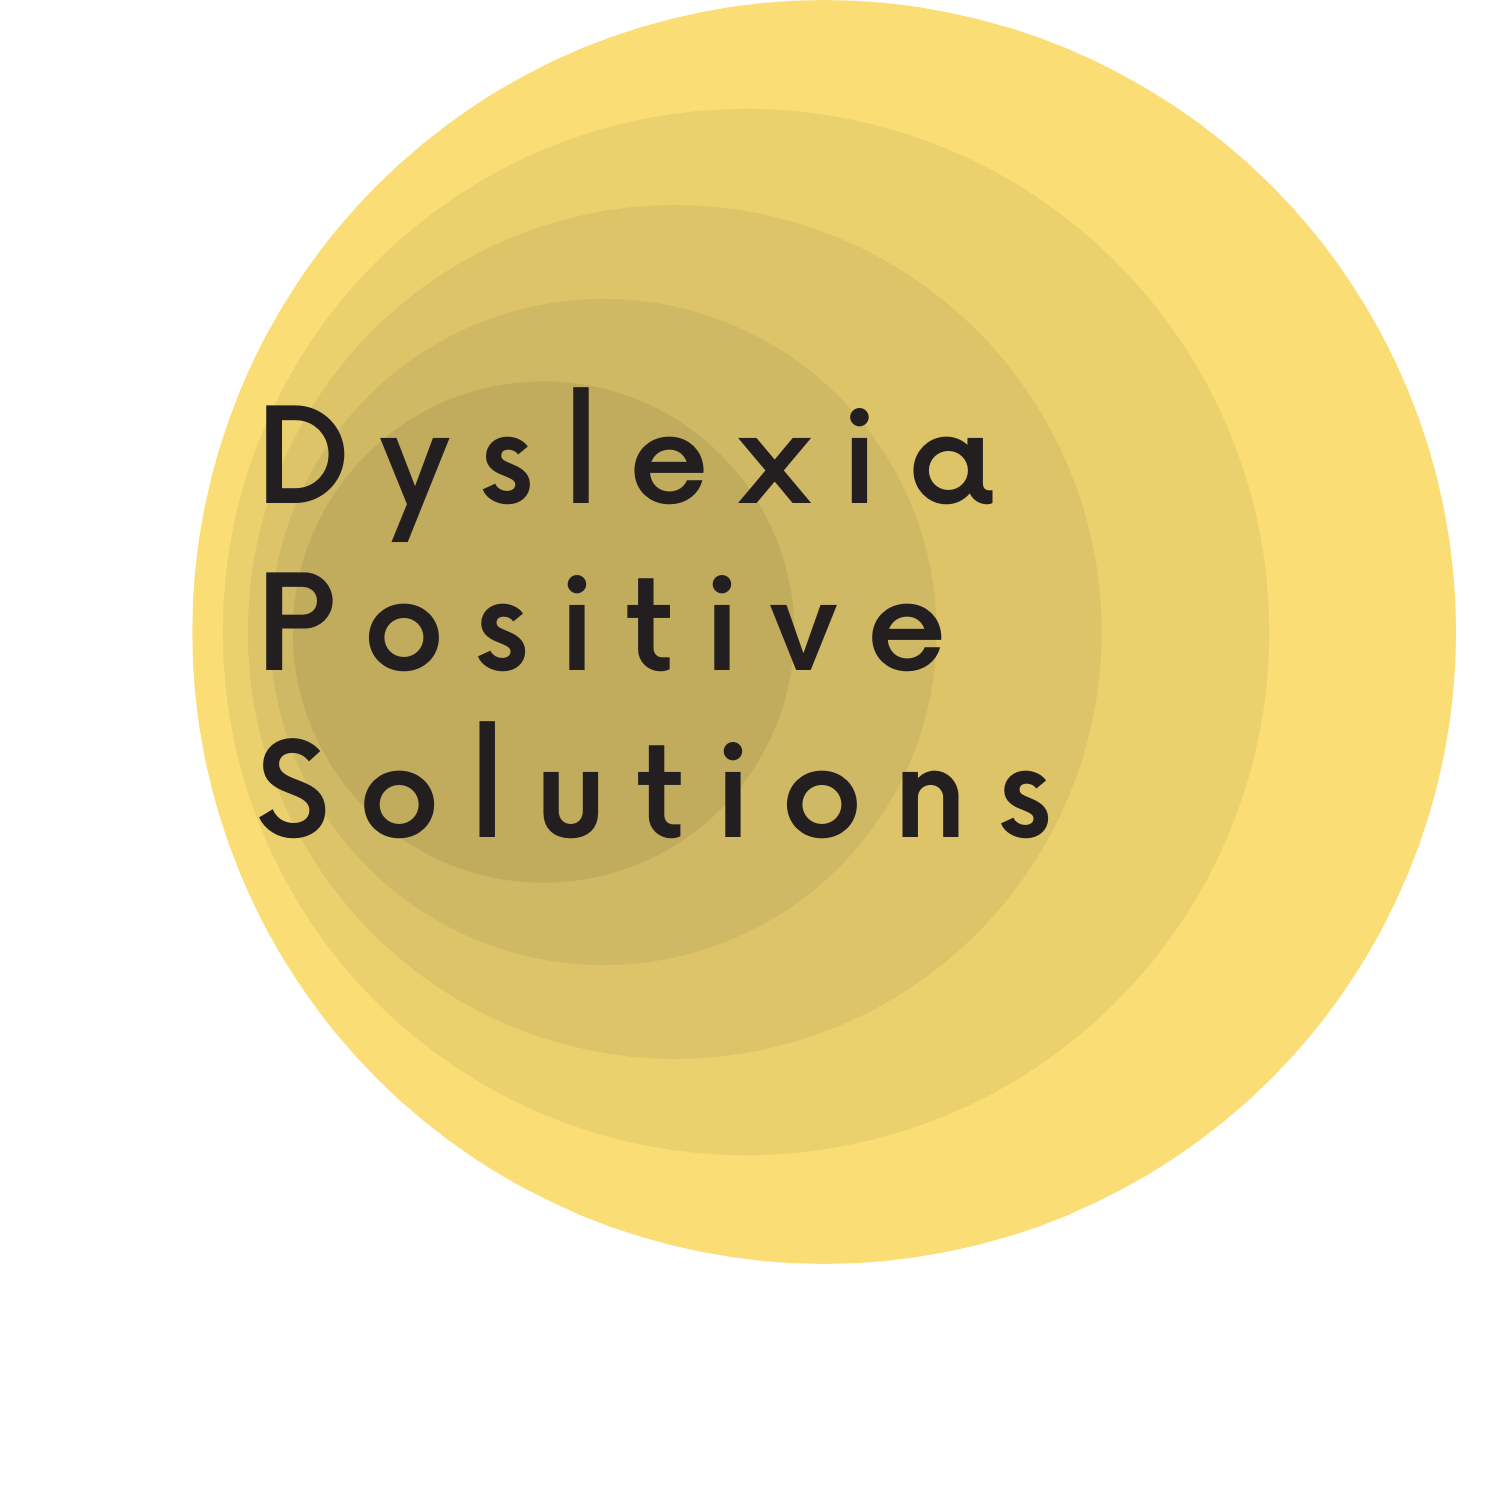 Dyslexia Positive Solutions